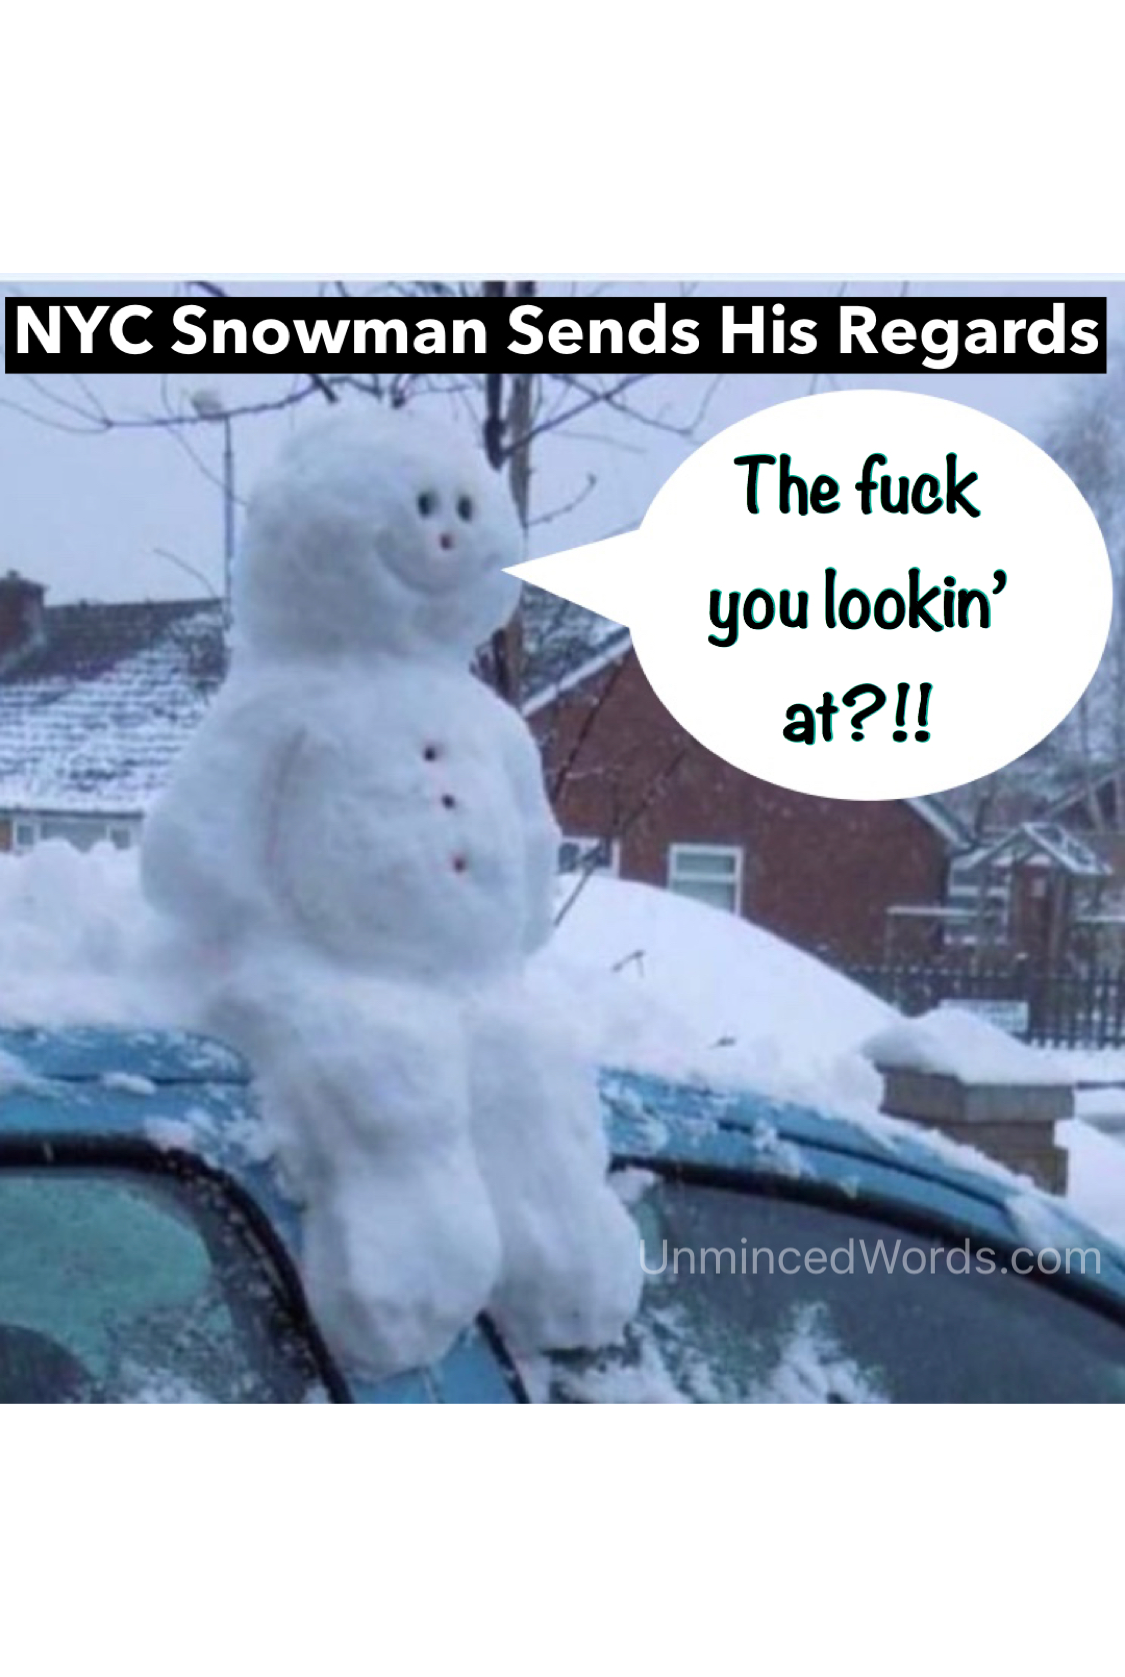 NYC Snowman sends his regards.